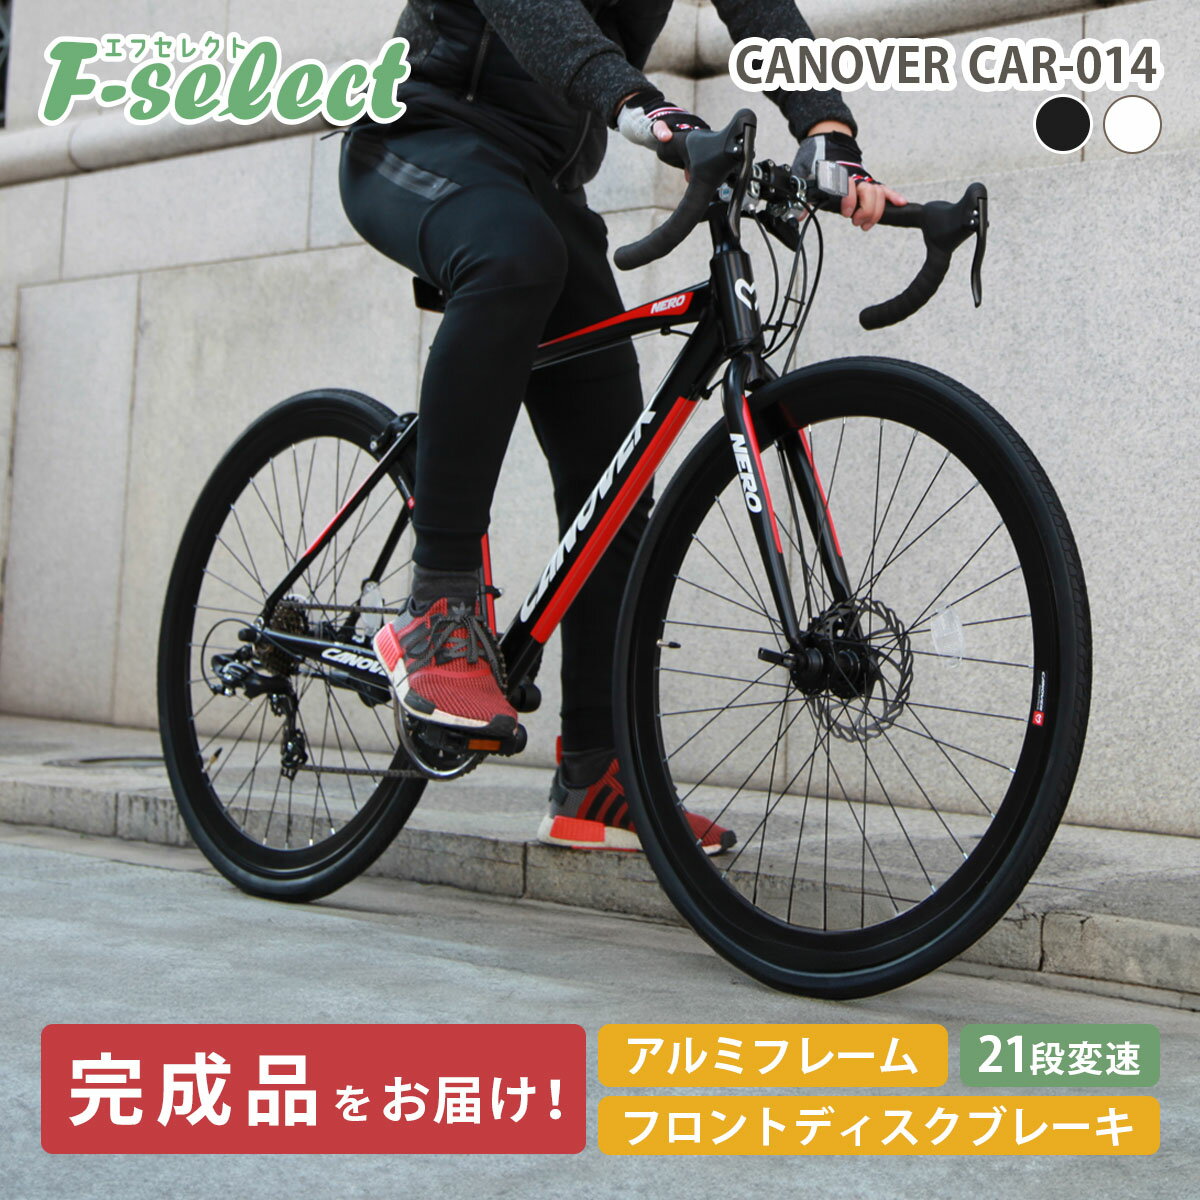 ロードバイク 自転車 グラベルロード 700×28C シマノ21段変速 軽量 アルミフレーム フロントディスクブレーキ カノーバー ネロ CANOVER CAR-014-DC NERO 自転車本体